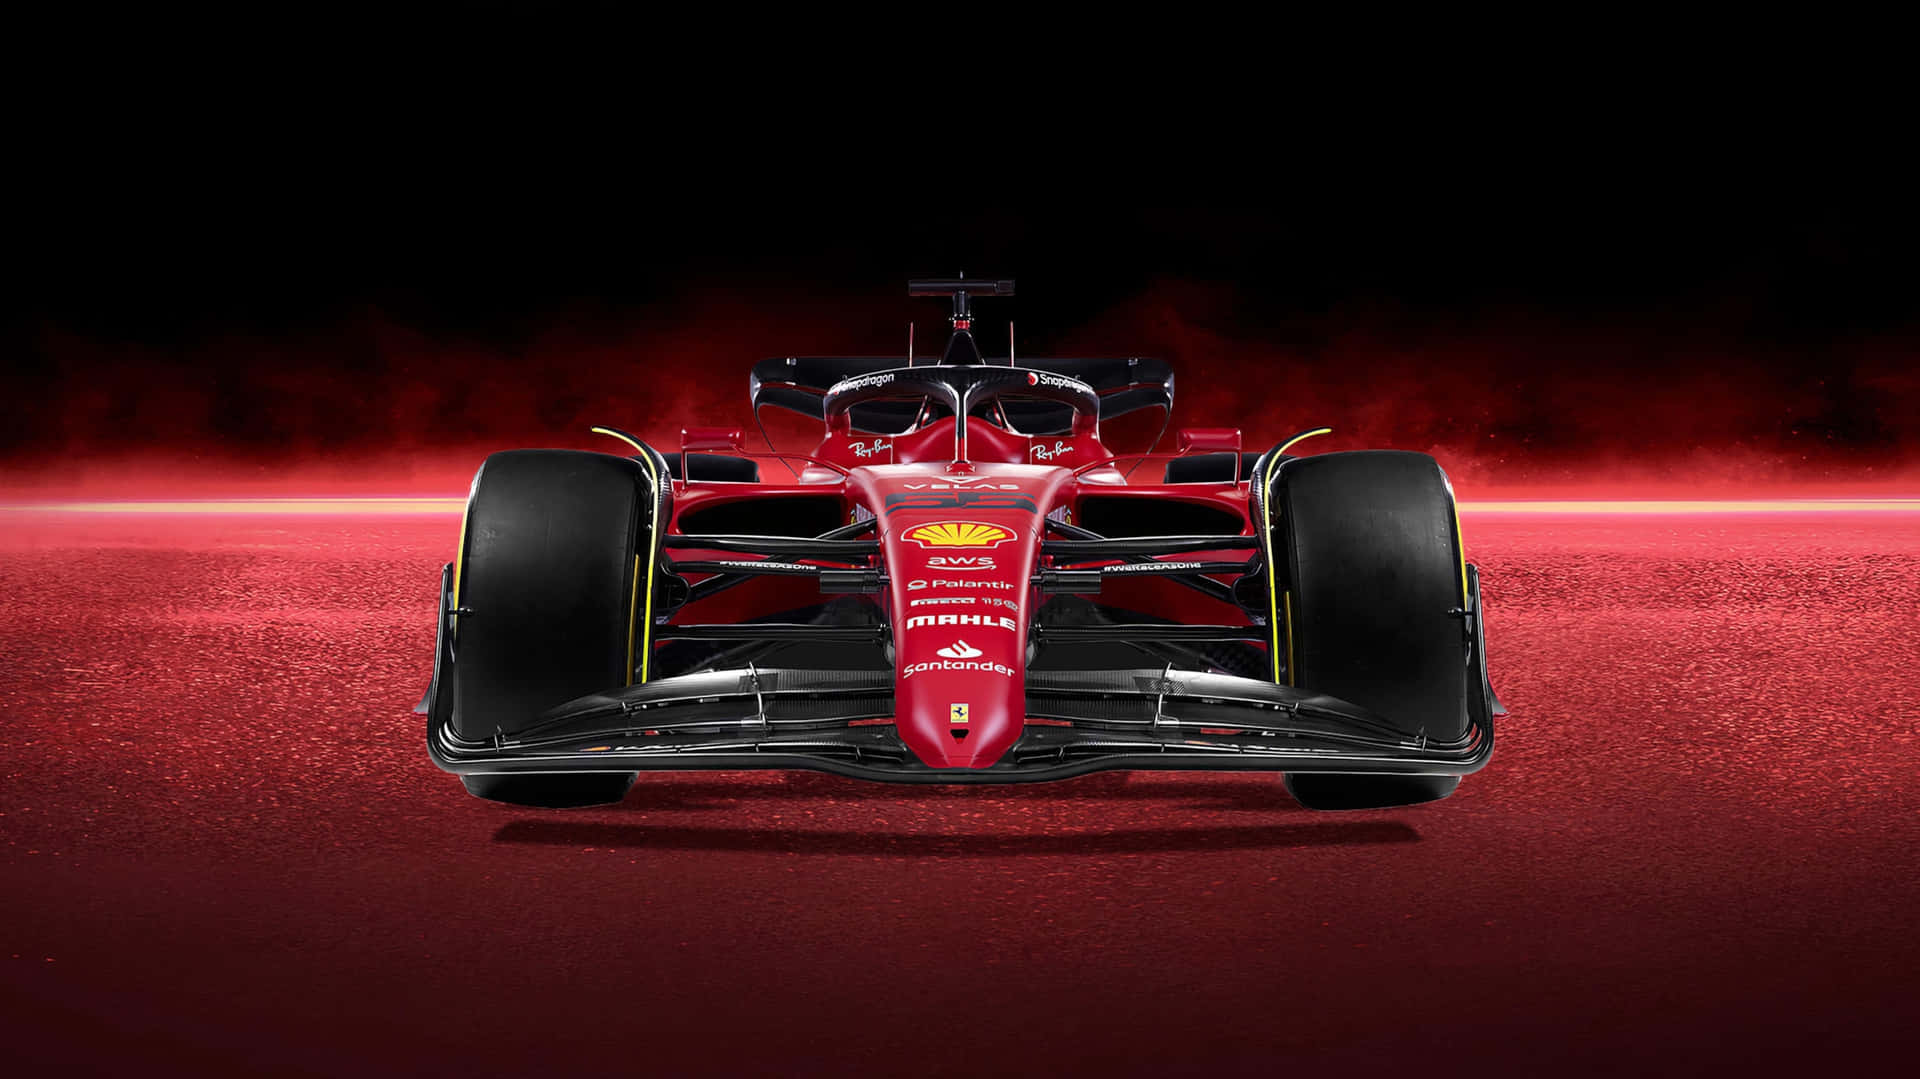 Behind the Scenes Look at Ferrari F1 Wallpaper